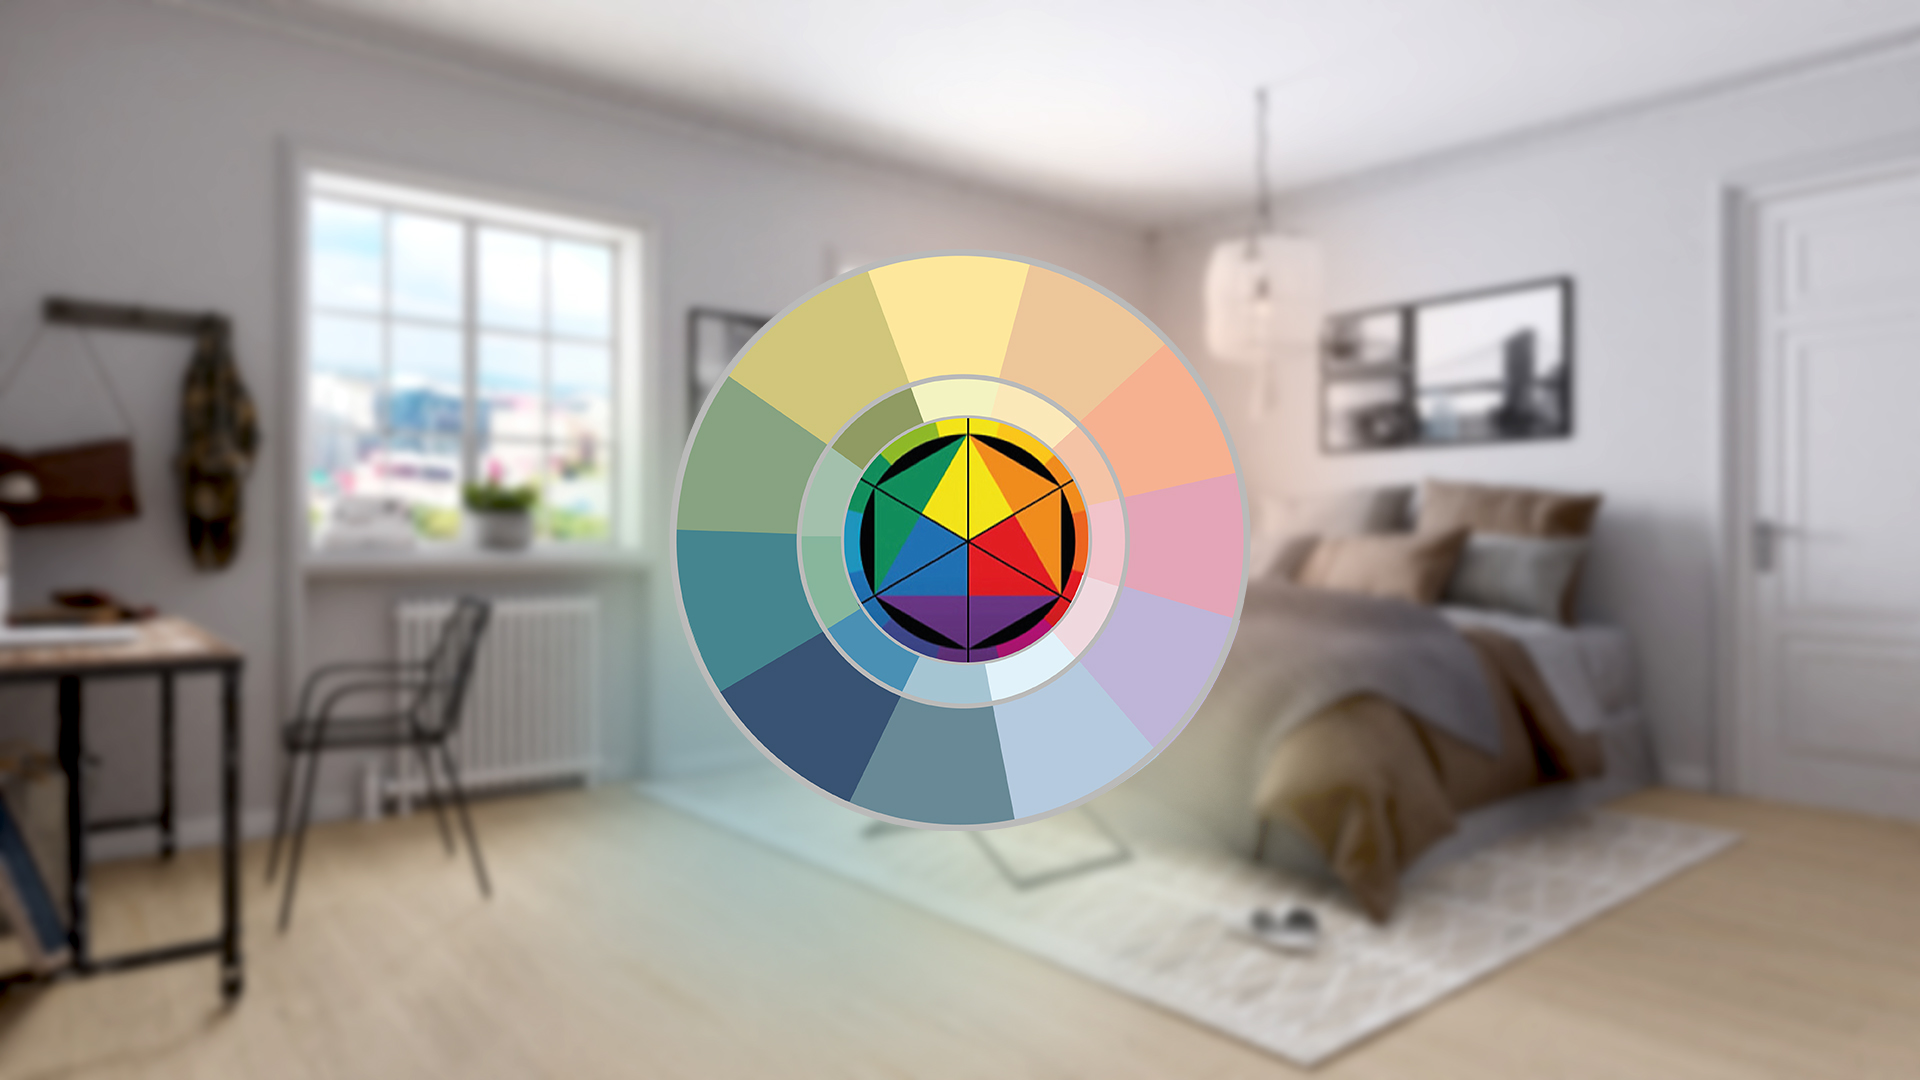 Как сочетать цвета в интерьере с использованием круга Иттена - статья CarteBlanche